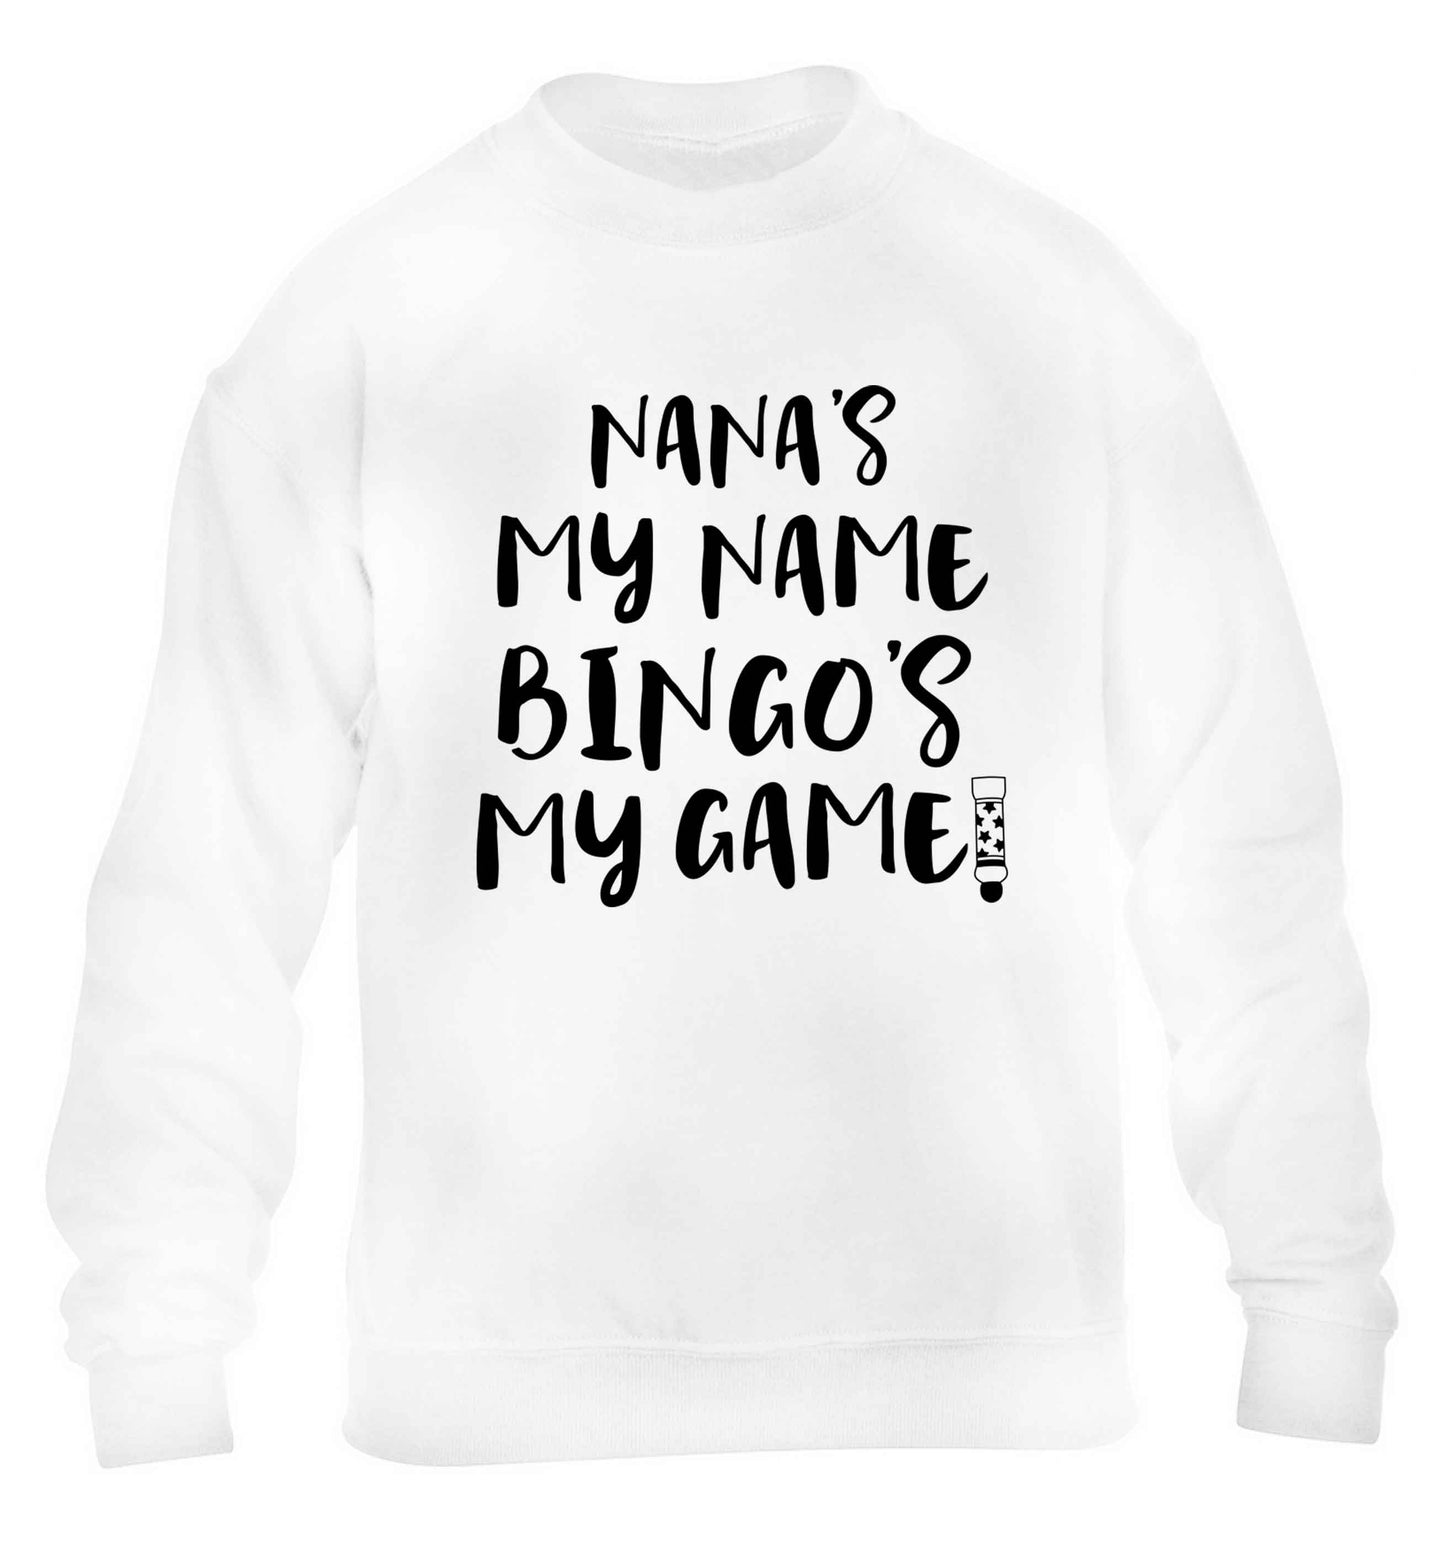 Nana's my name bingo's my game! children's white sweater 12-13 Years